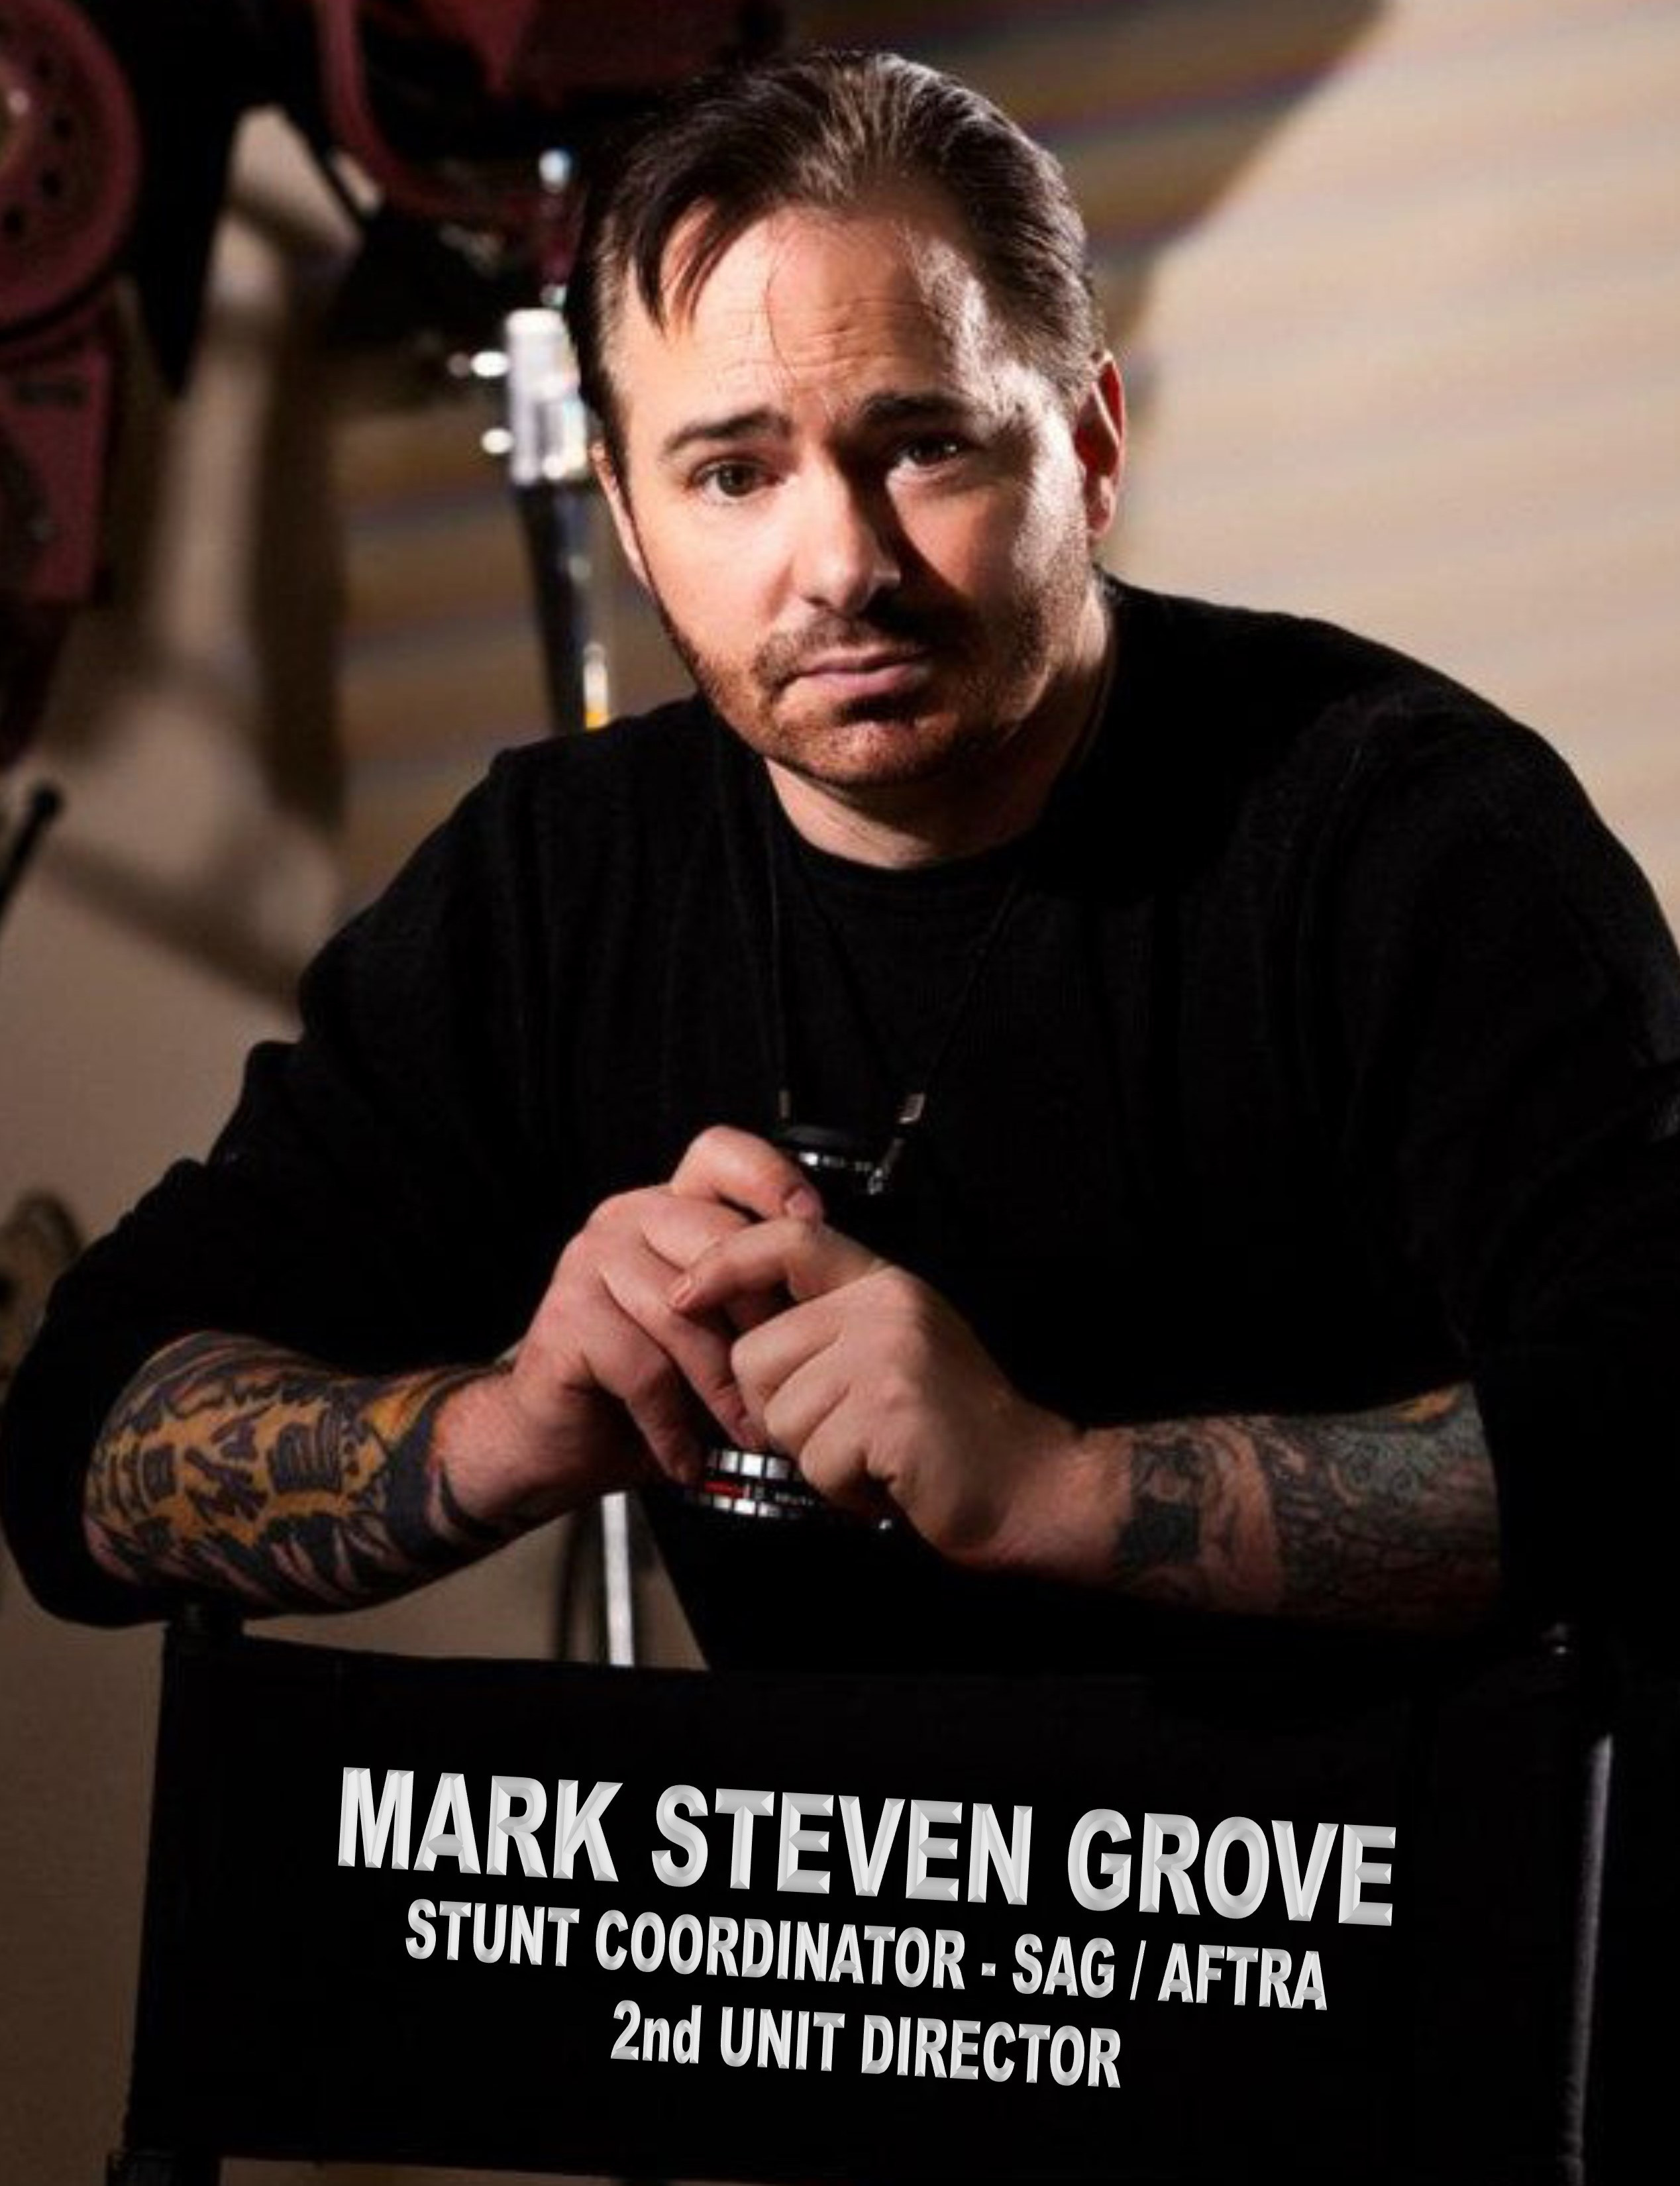 Mark Steven Grove